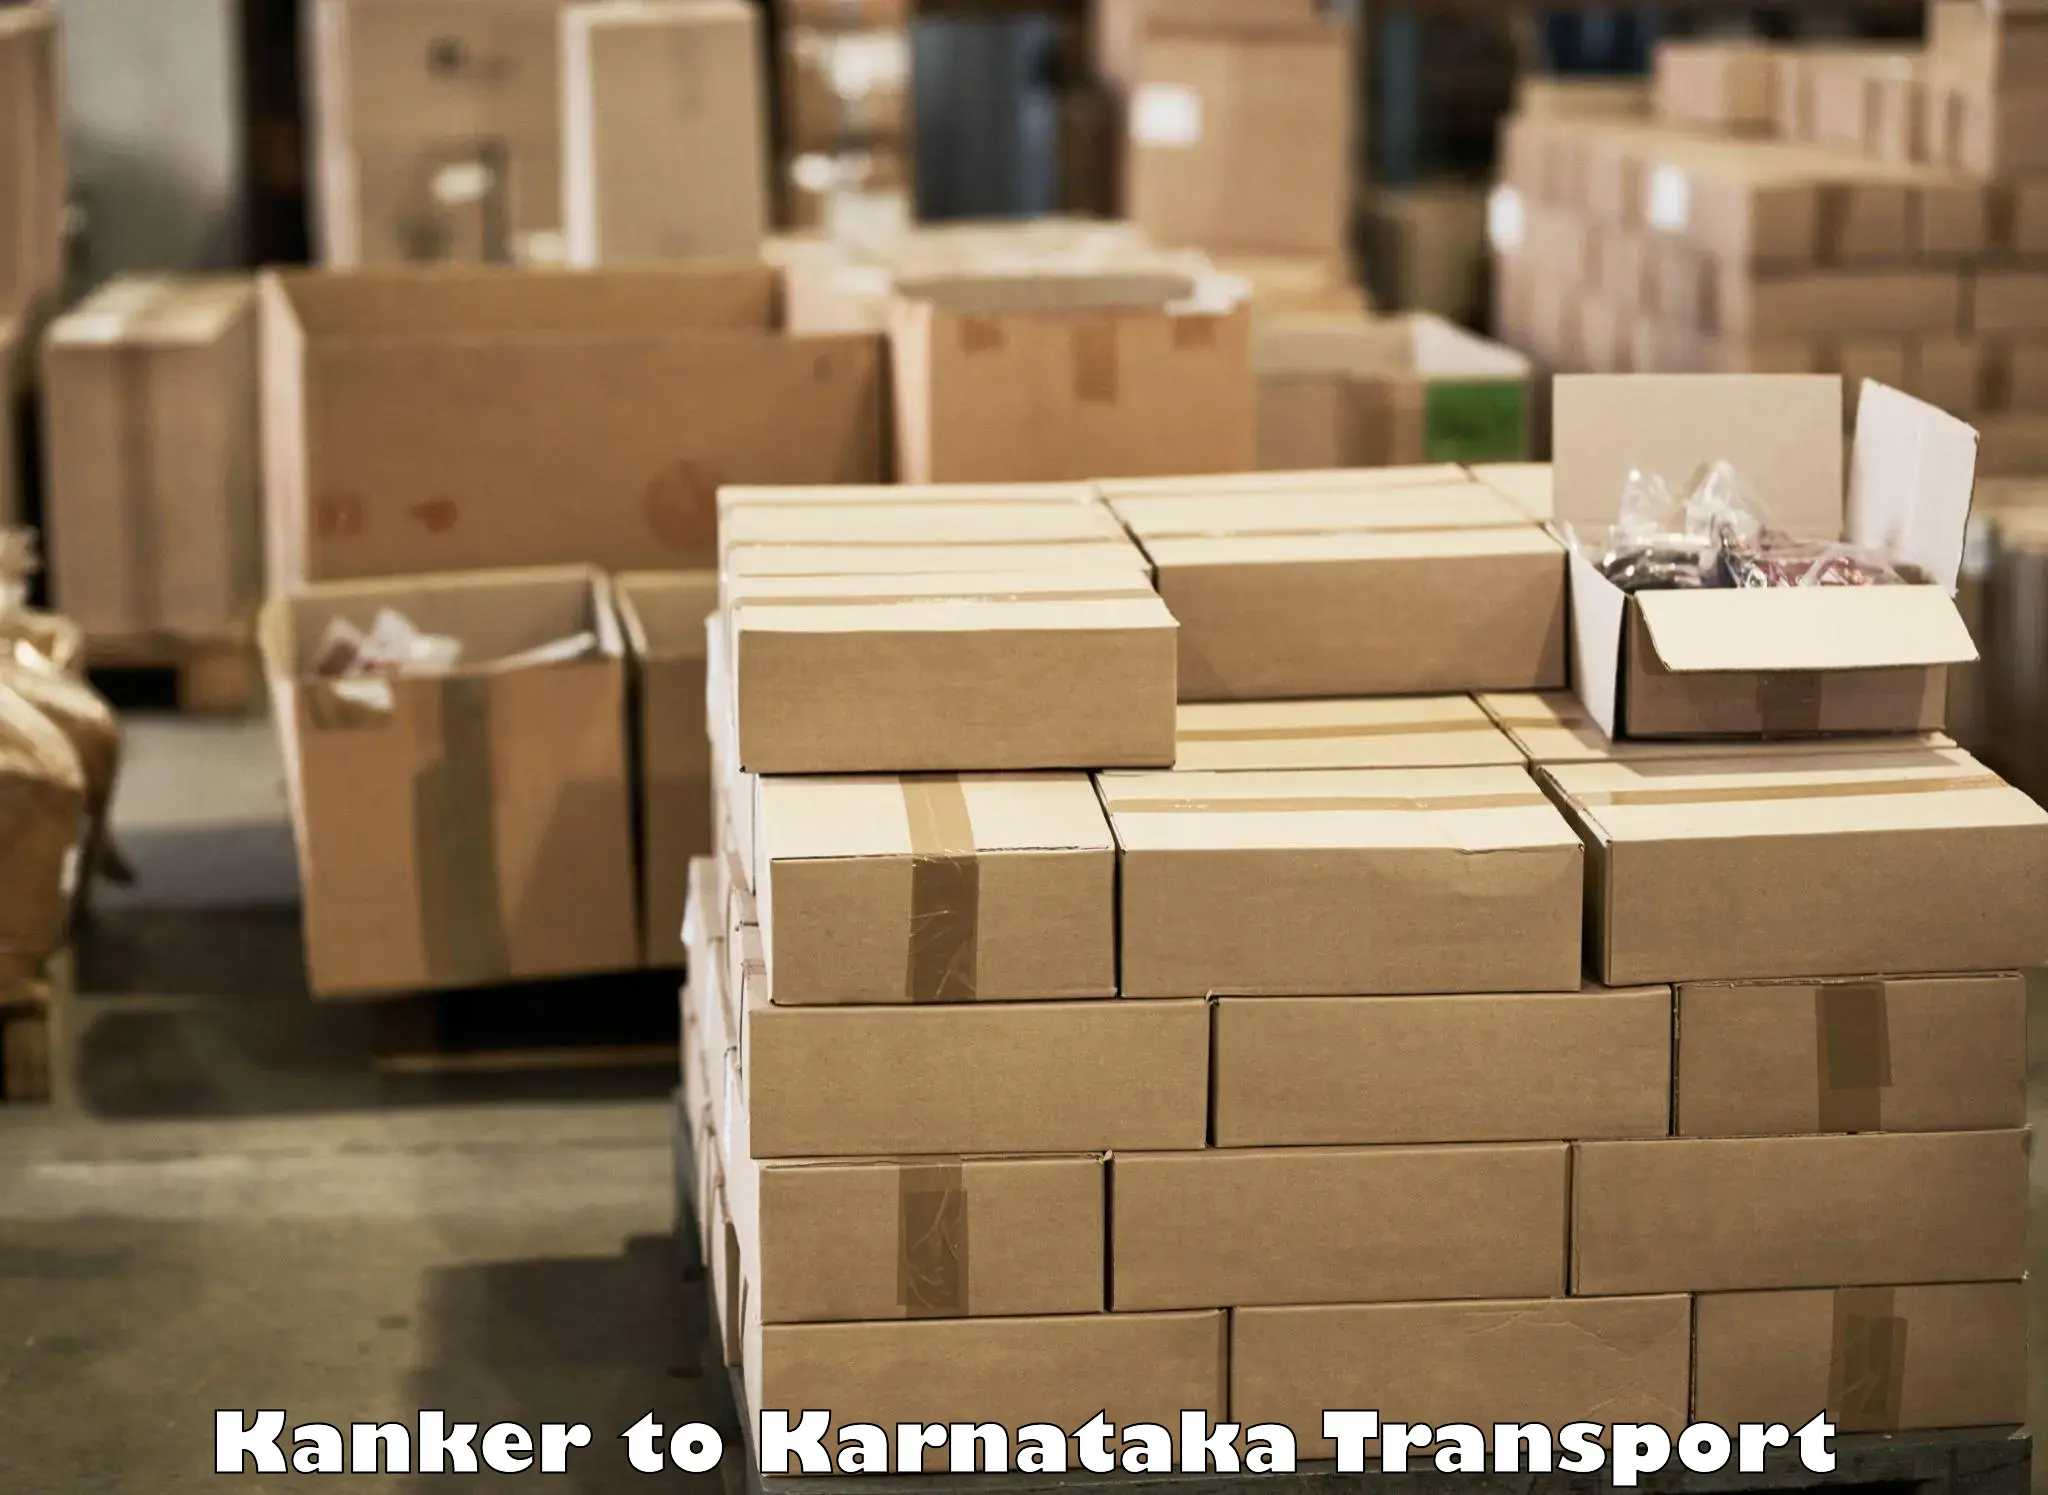 Interstate transport services Kanker to Karwar